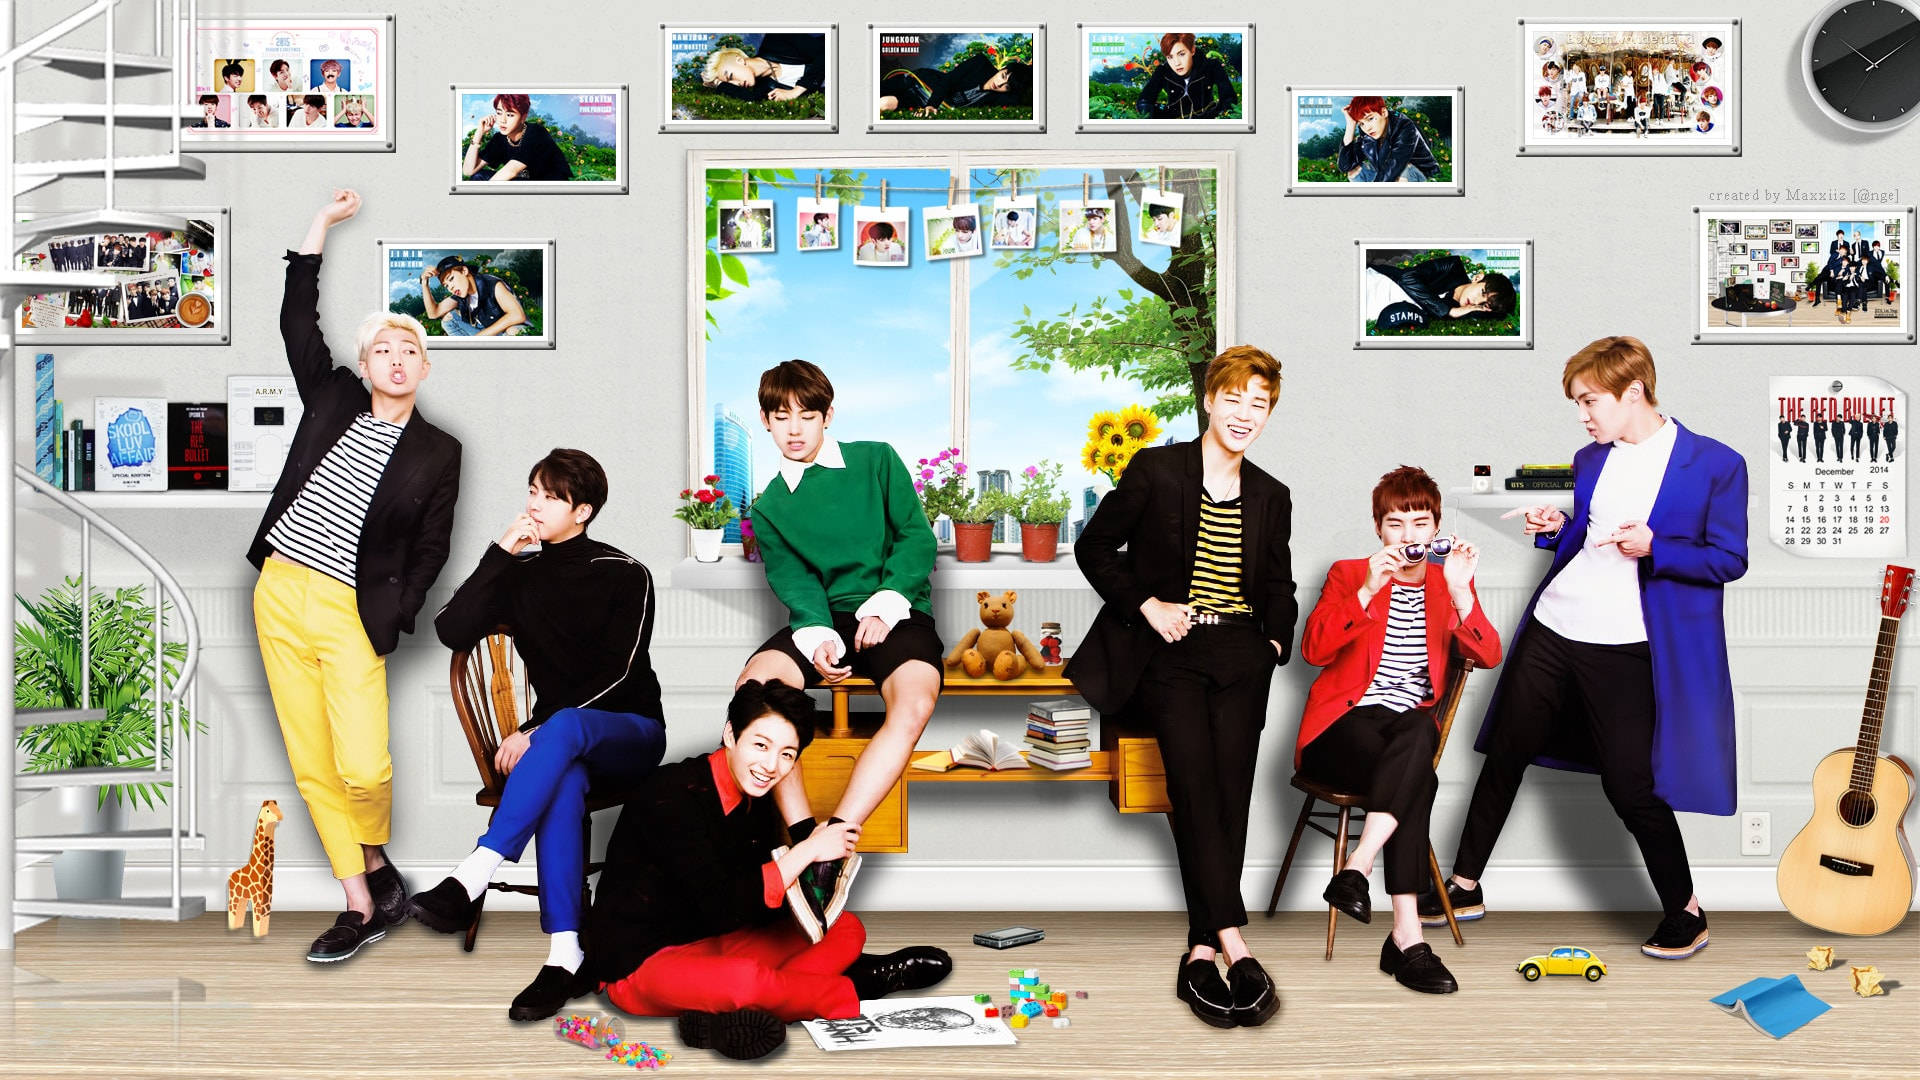 Einegruppe Von Jungs Sitzt In Einem Raum Mit Bildern. Wallpaper